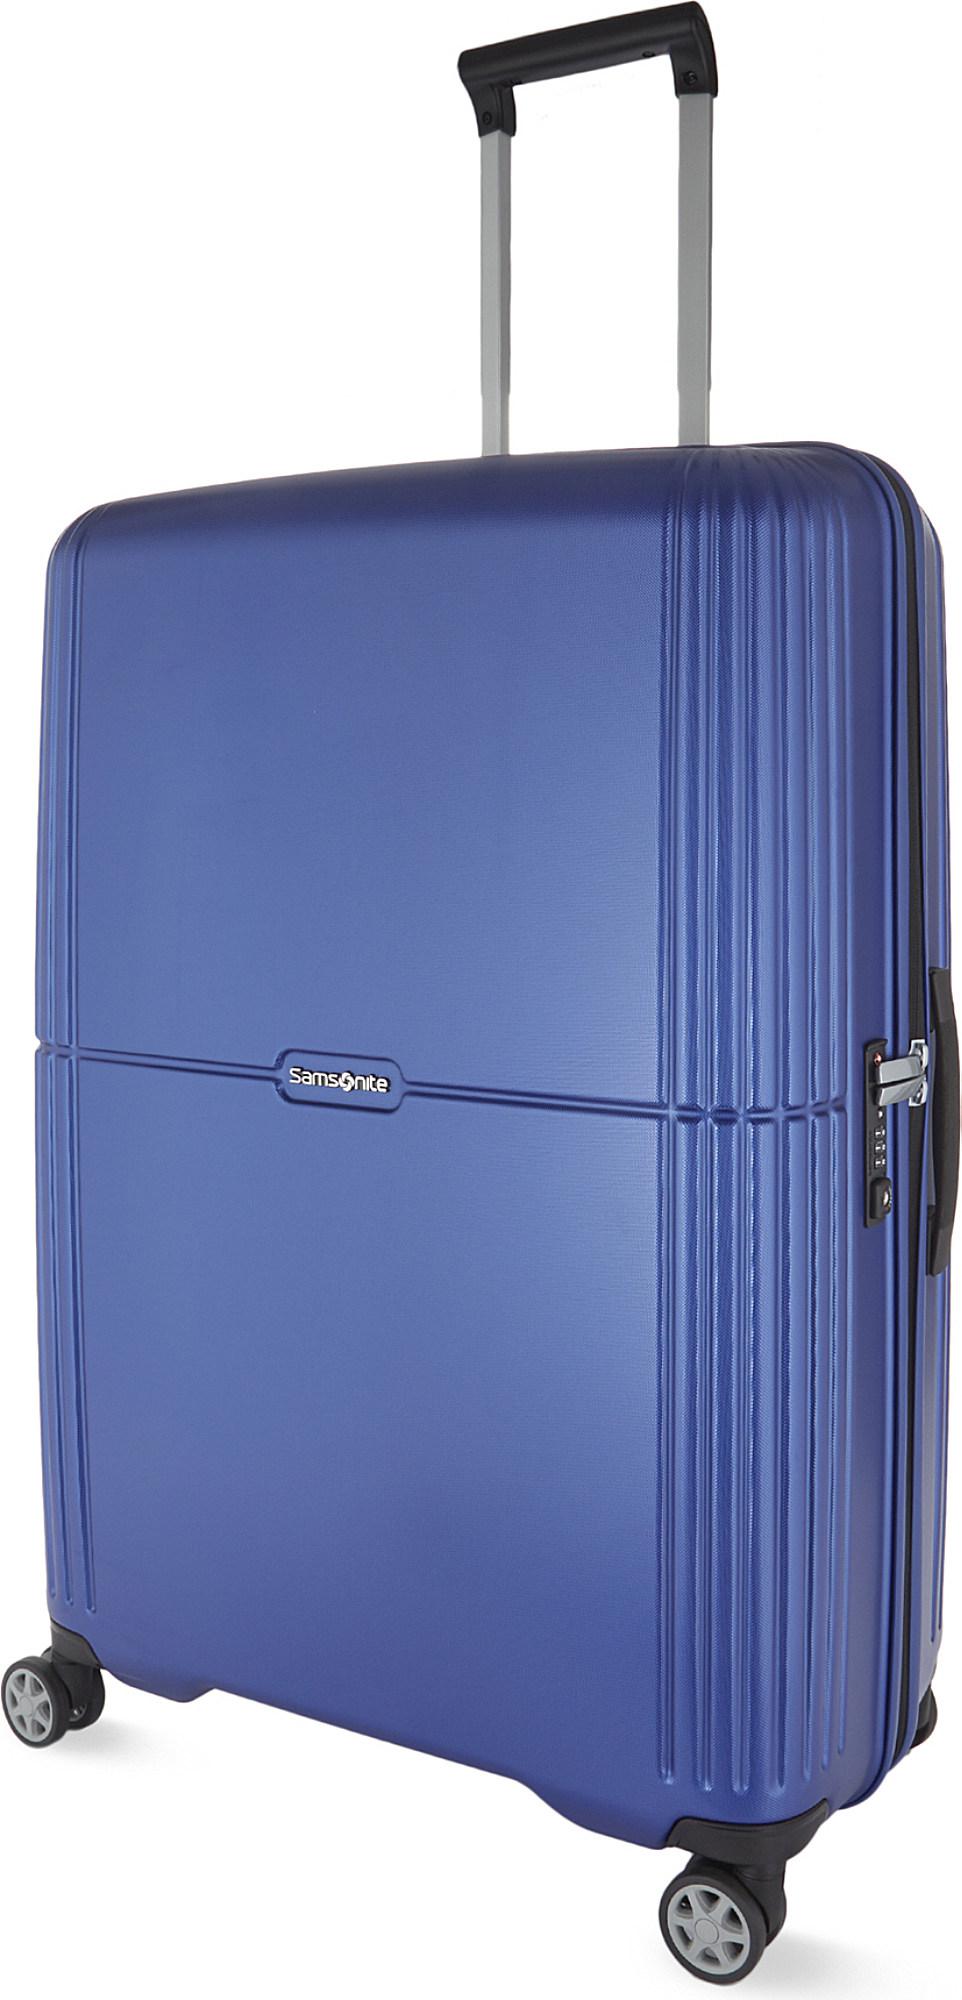 Samsonite Orfeo Spinner Suitcase 75cm in Cobalt Blue (Blue) - Lyst